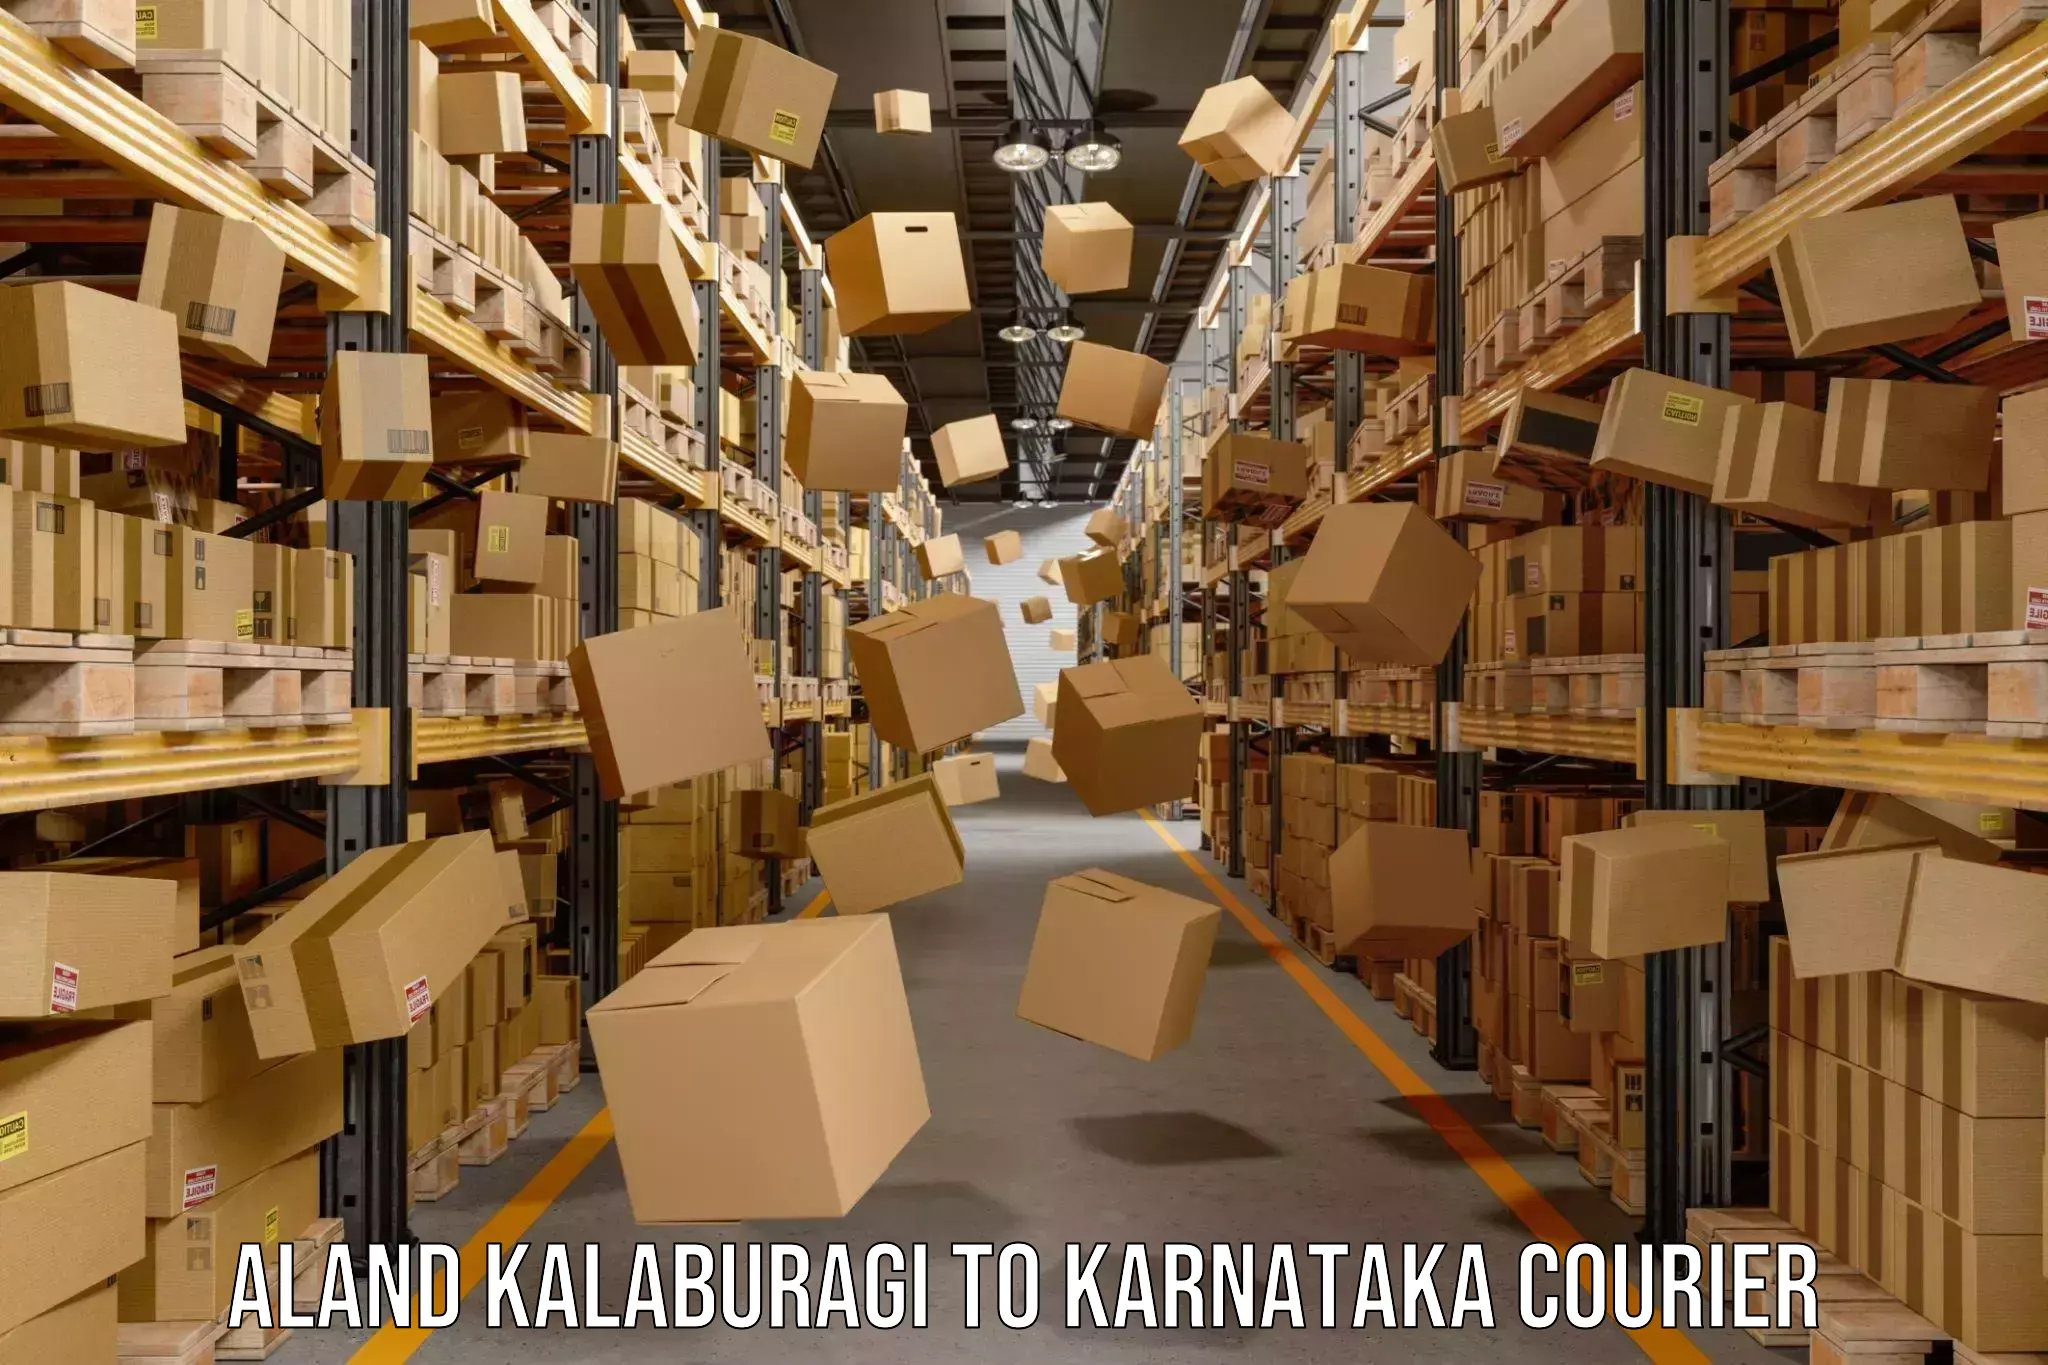 Logistics service provider Aland Kalaburagi to Karnataka